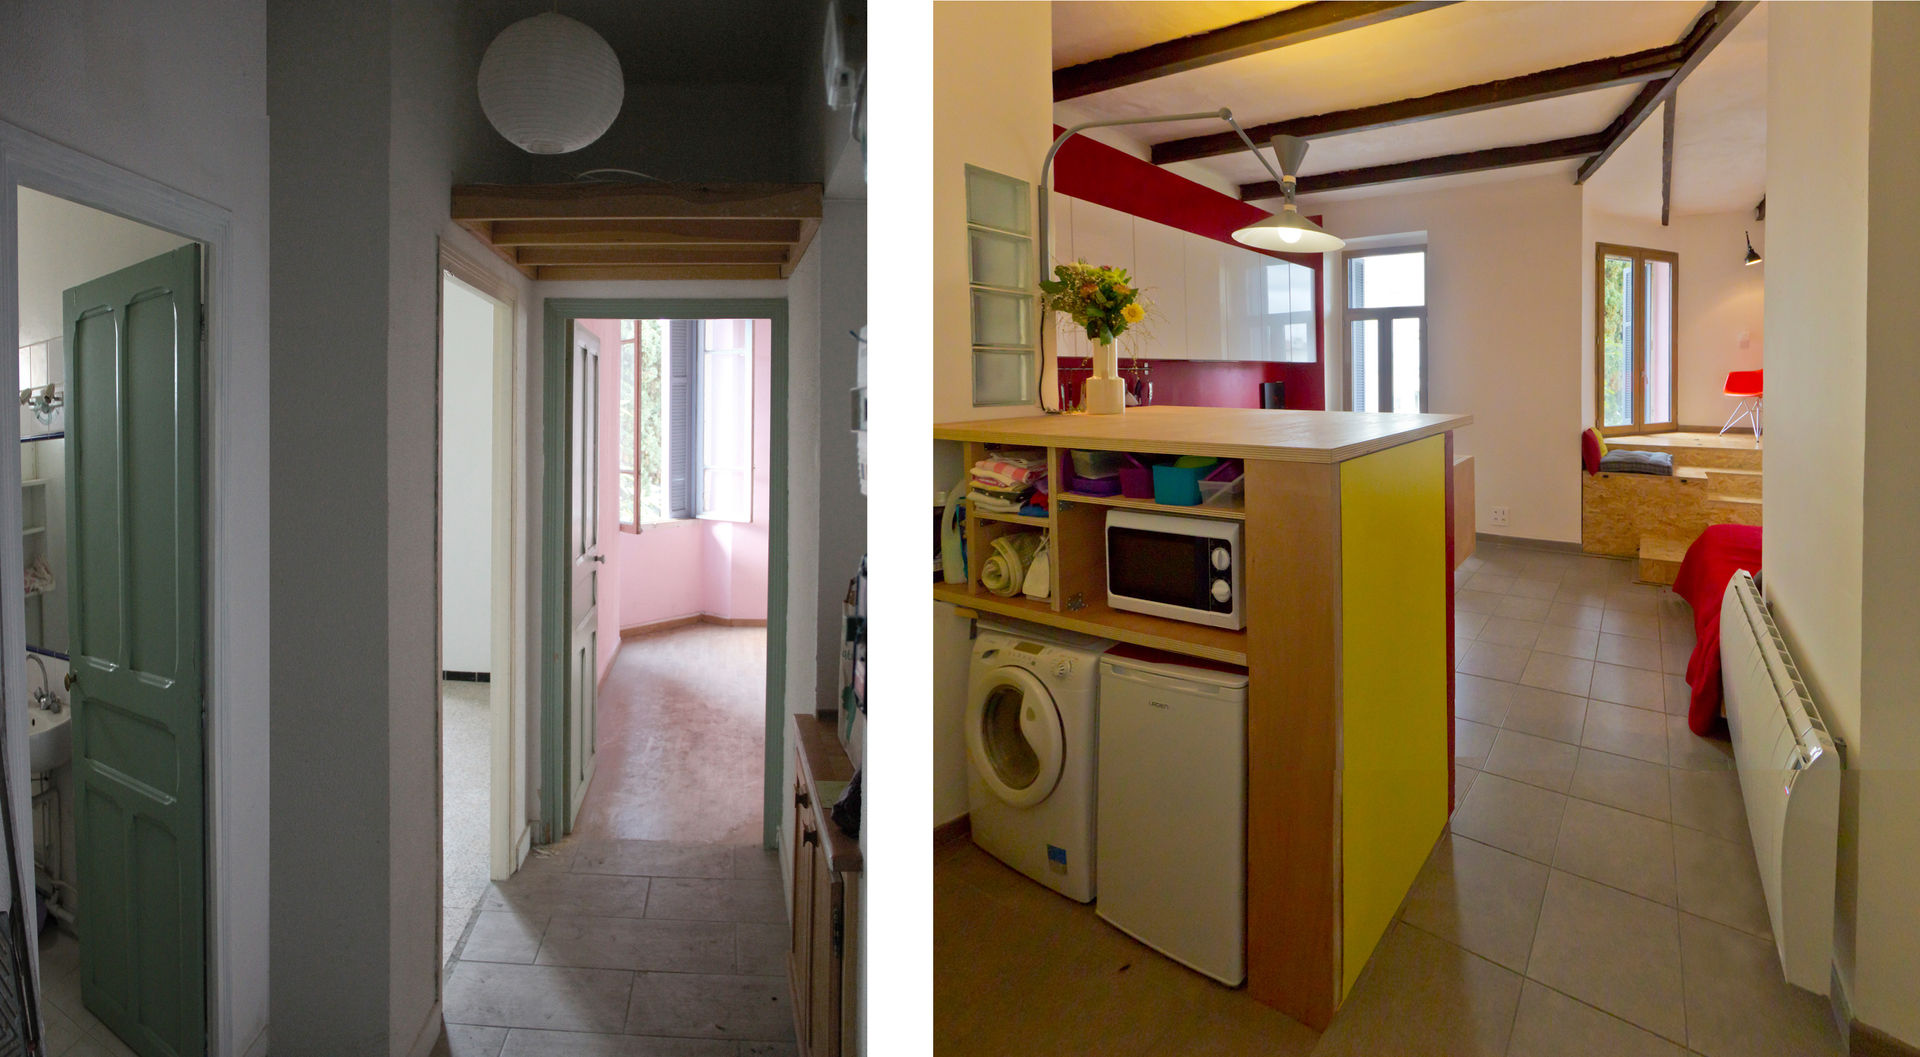 Rénovation d'un appartement à Ajaccio « Grand volume pour petite surface, un mini- loft tout citadin », Atelier RnB Atelier RnB Salas de estar modernas